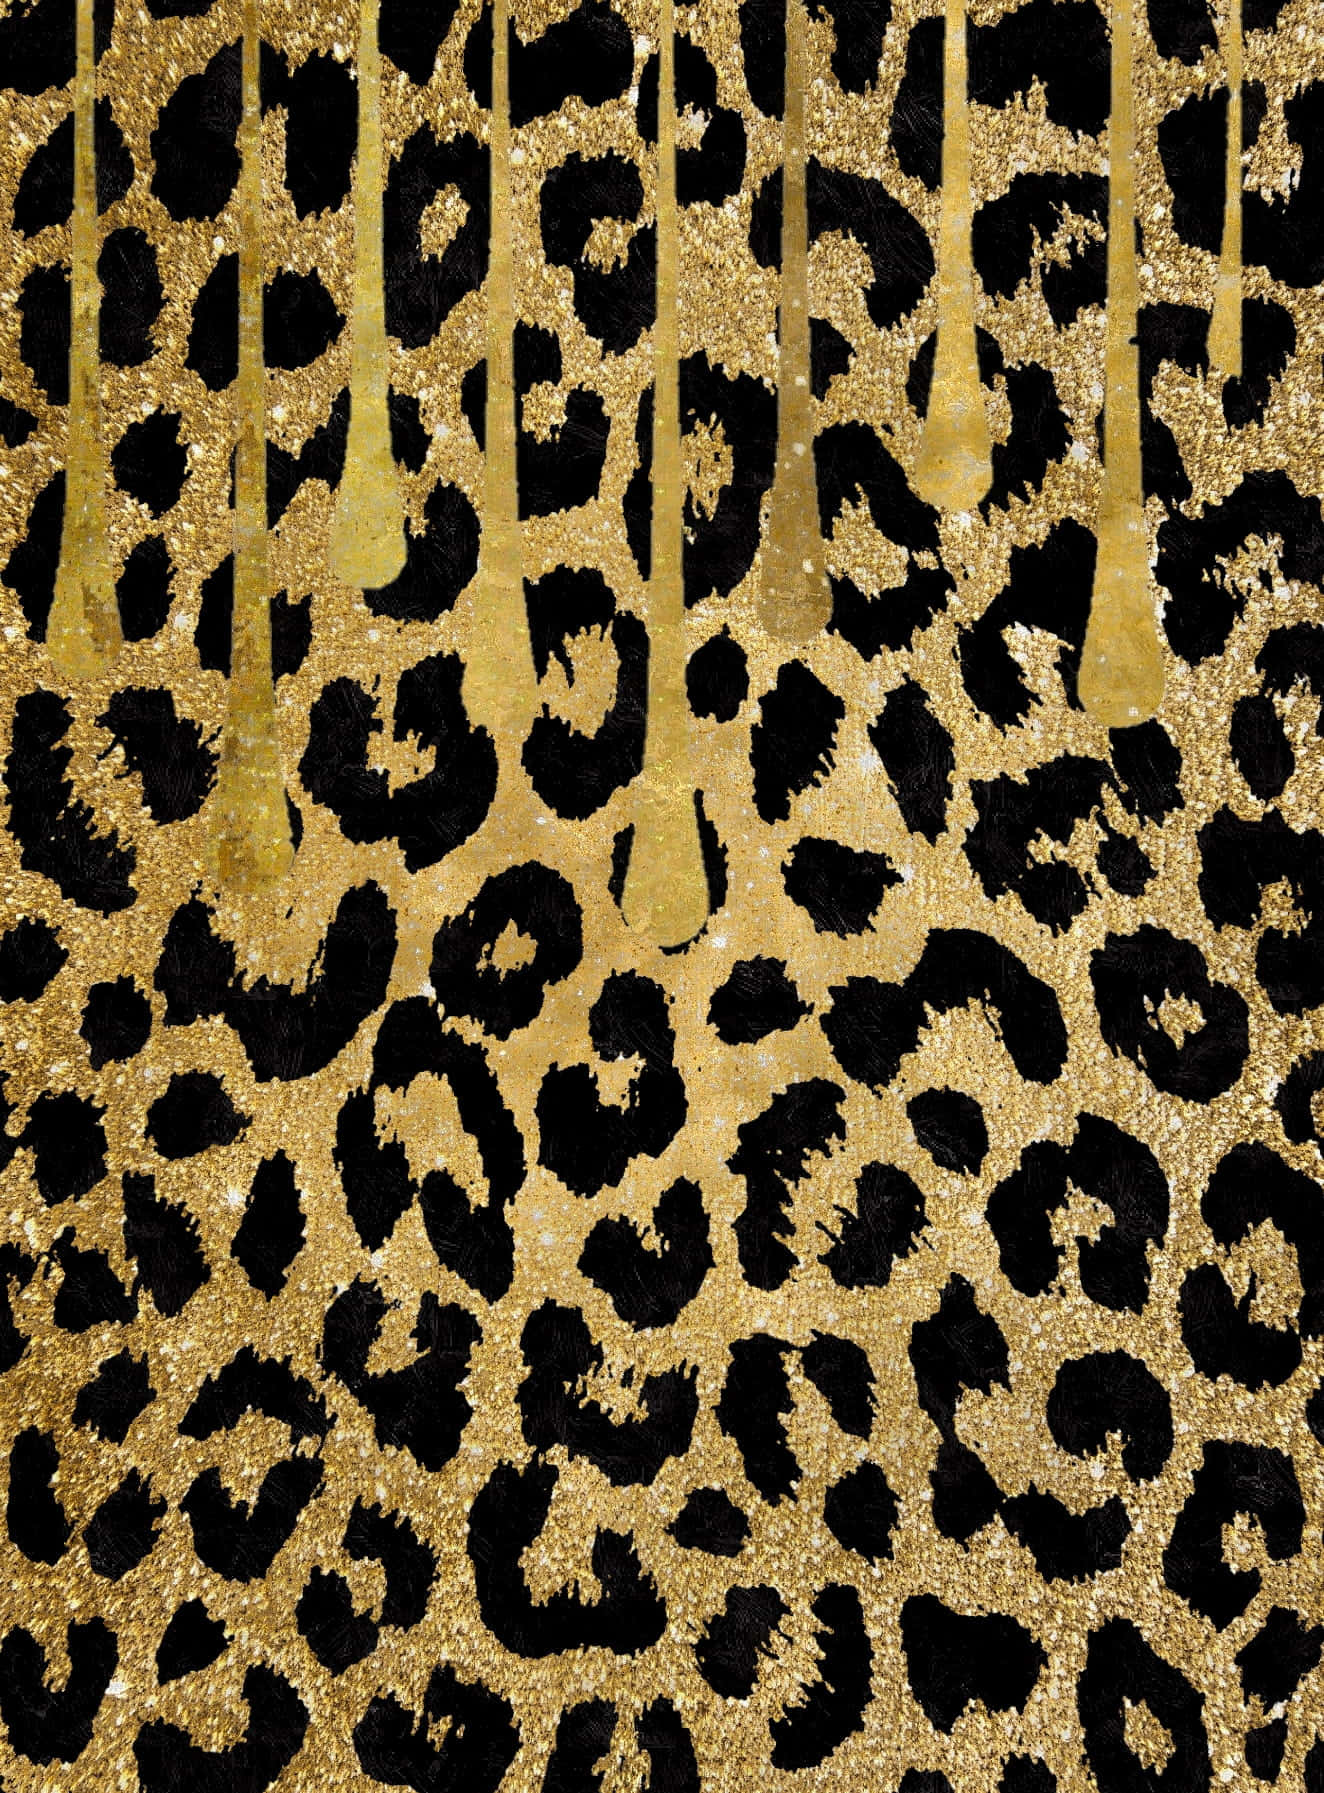 Gucci Pattern, brown, cool, skulls, HD phone wallpaper